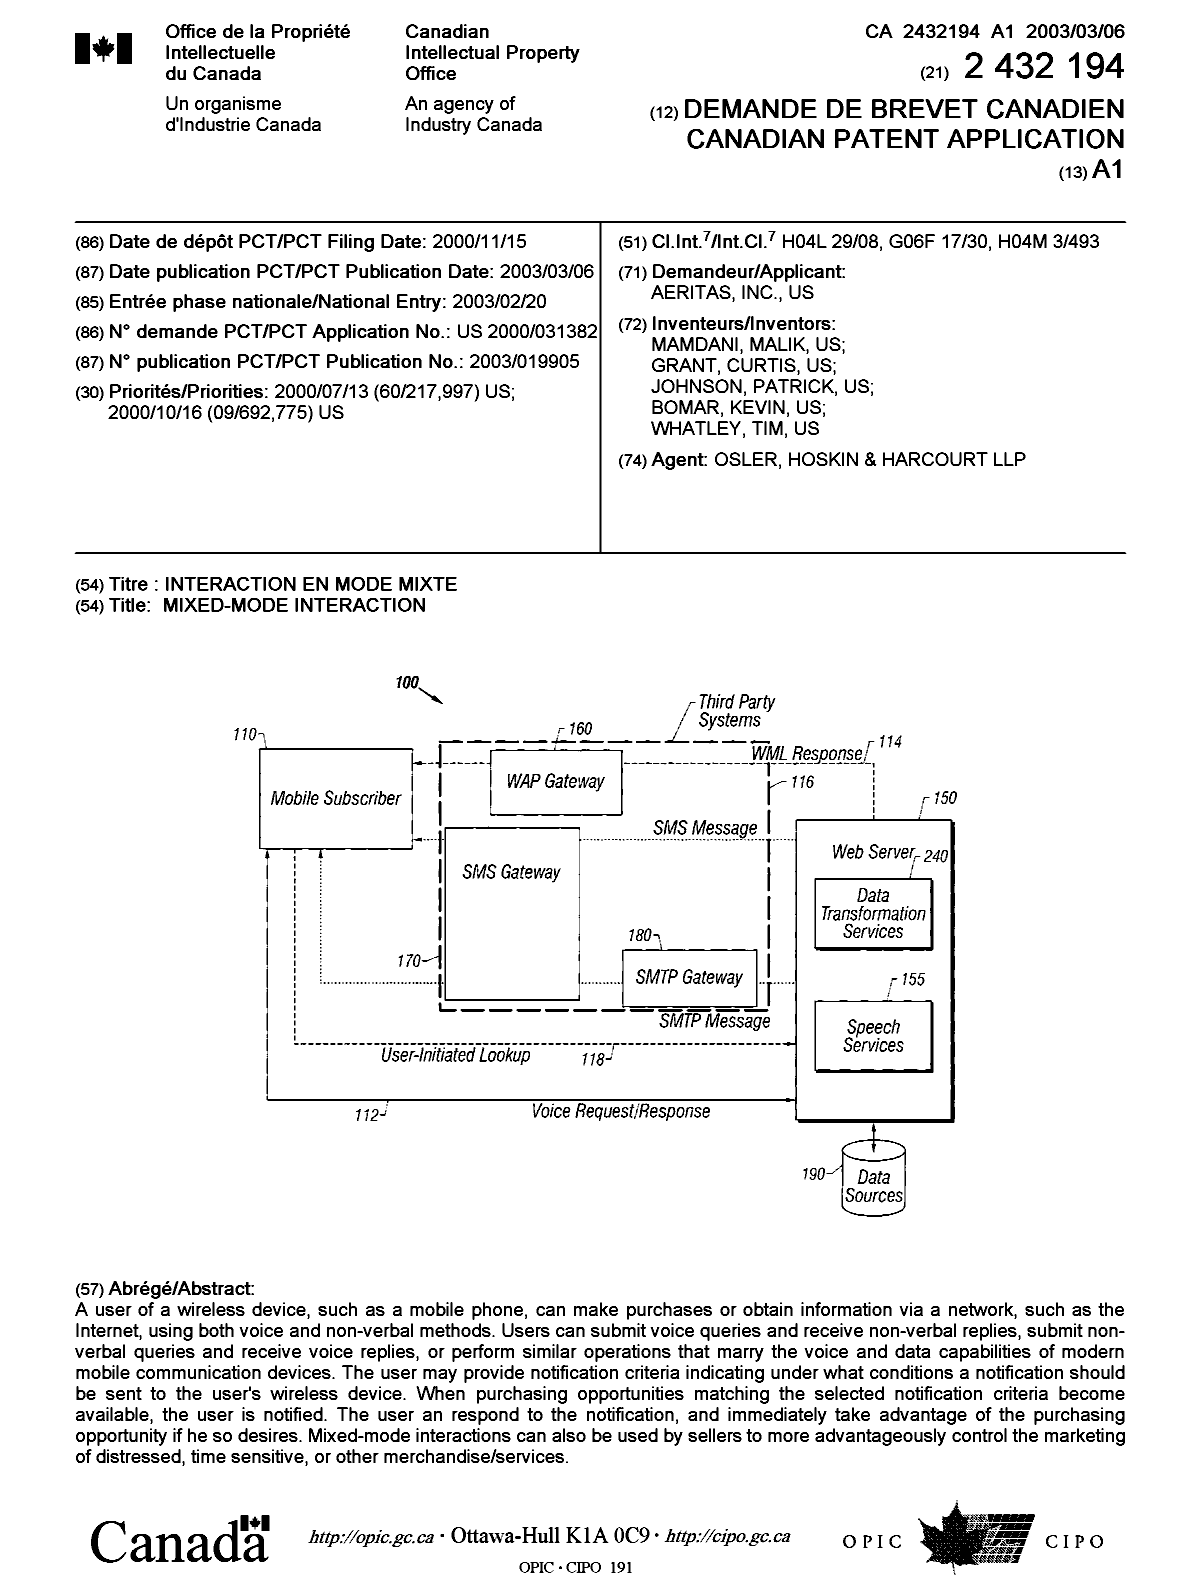 Document de brevet canadien 2432194. Page couverture 20021219. Image 1 de 1